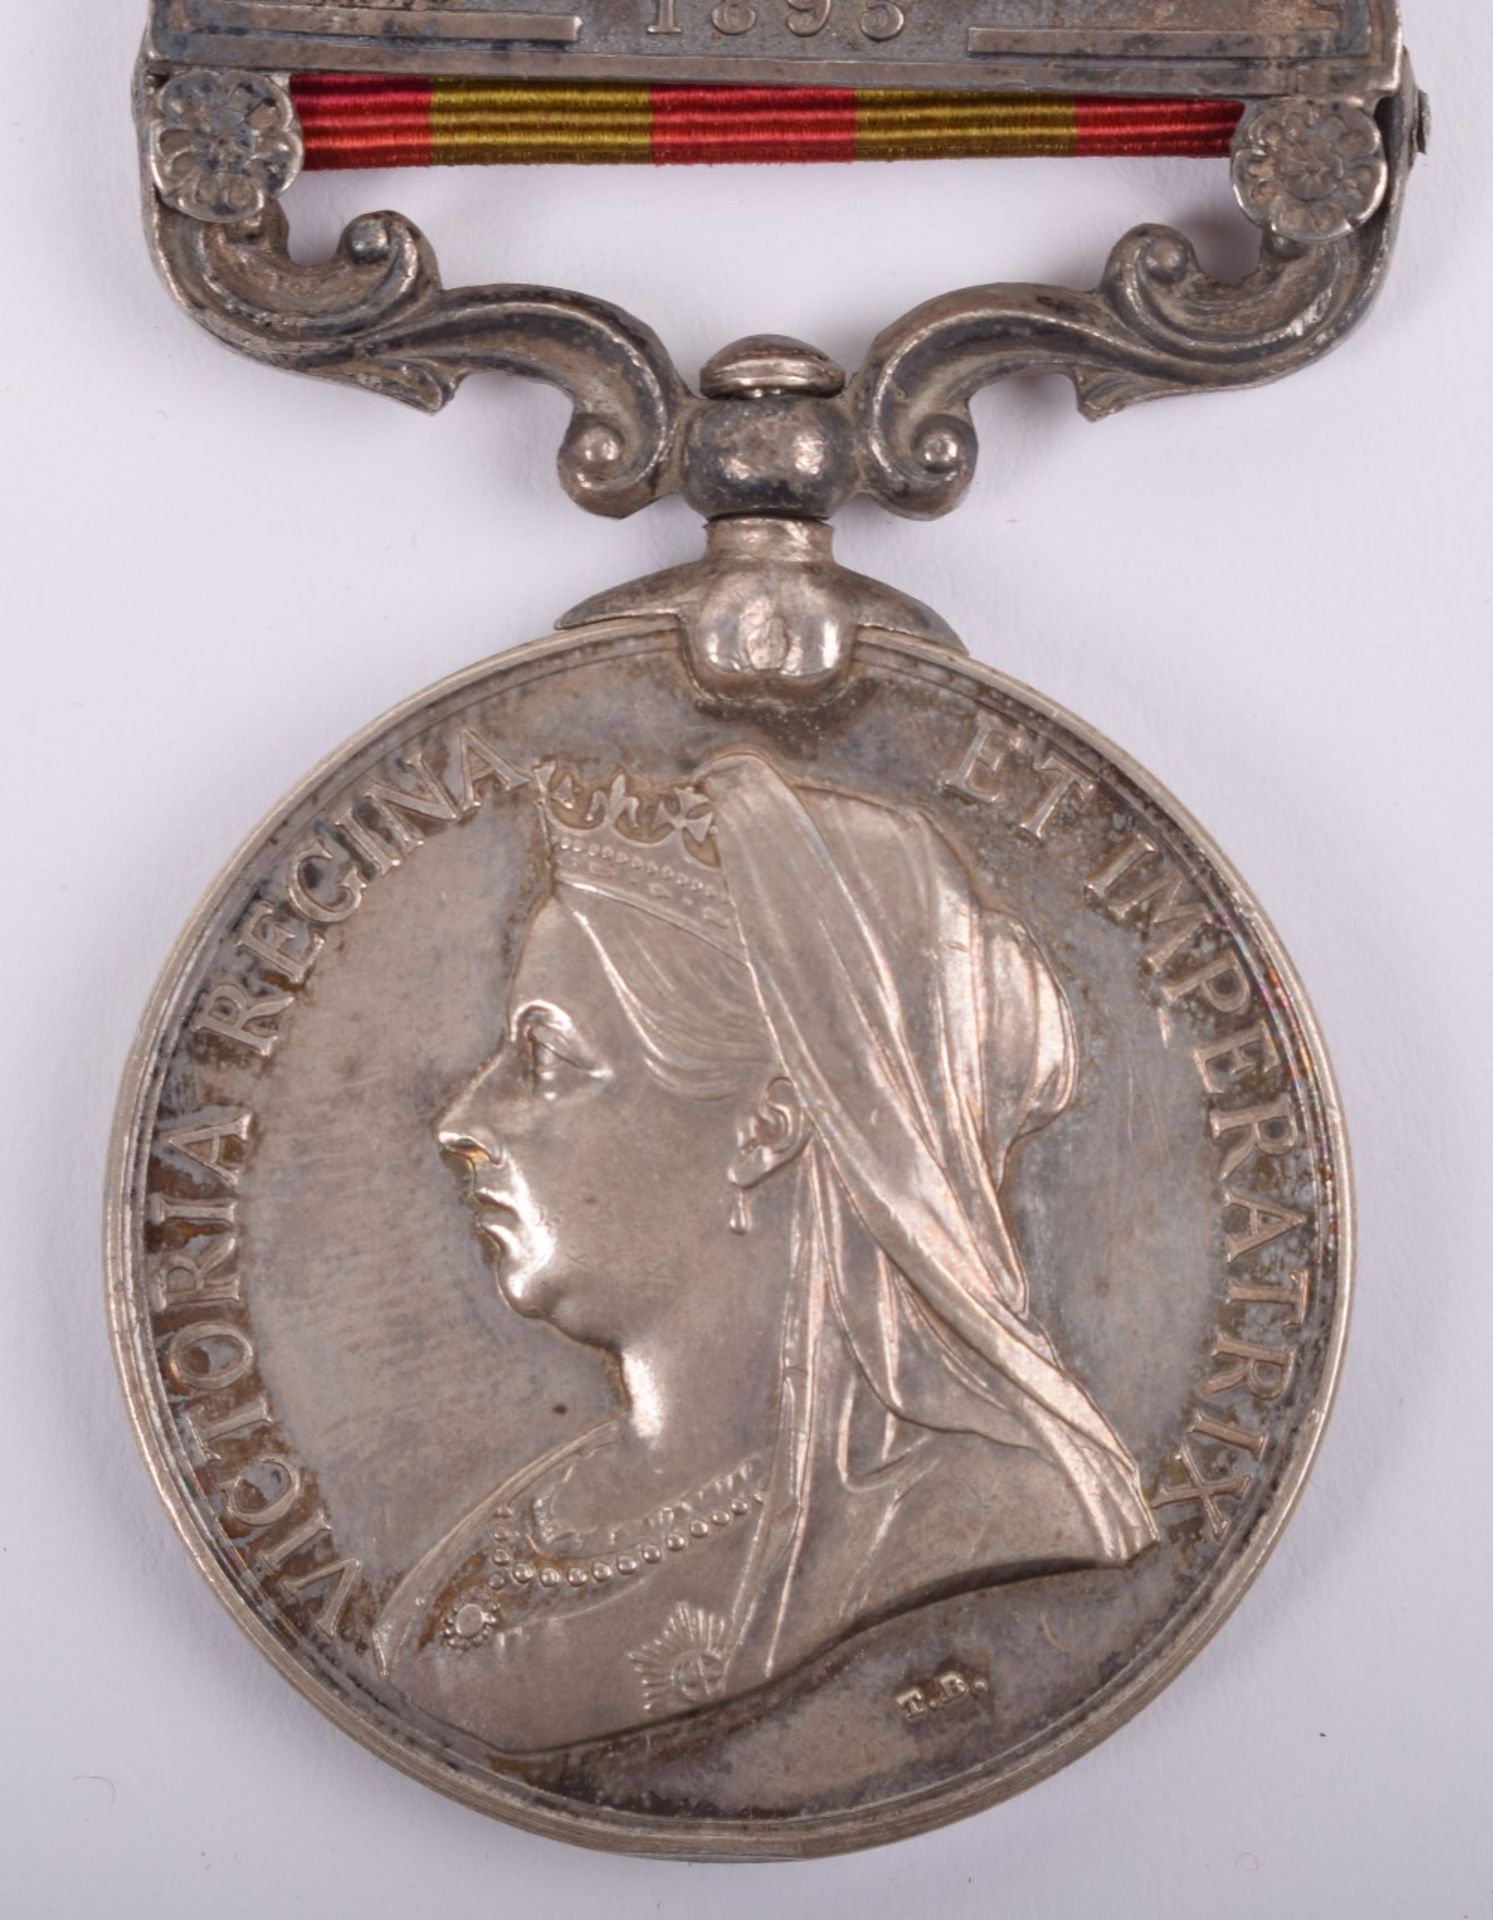 Indian General Service Medal 1895-1902 Seaforth Highlanders - Image 3 of 6